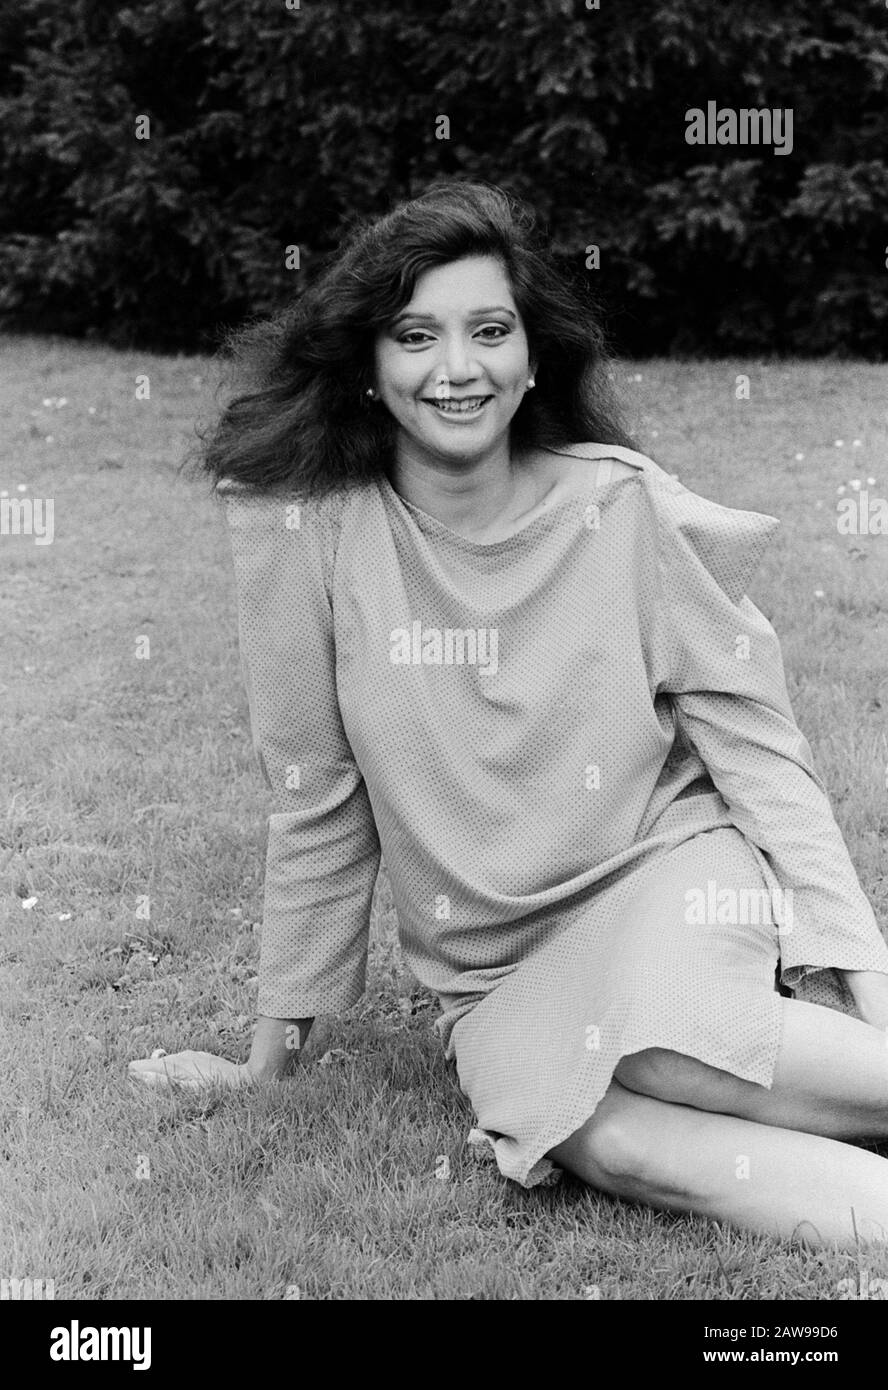 Asha Puthli, indische Sängerin und Schauspielerin, Amburgo, Deutschland um 1979. Attrice e cantante indiana Asha Puthli ad Amburgo, Germania intorno al 1979. Foto Stock